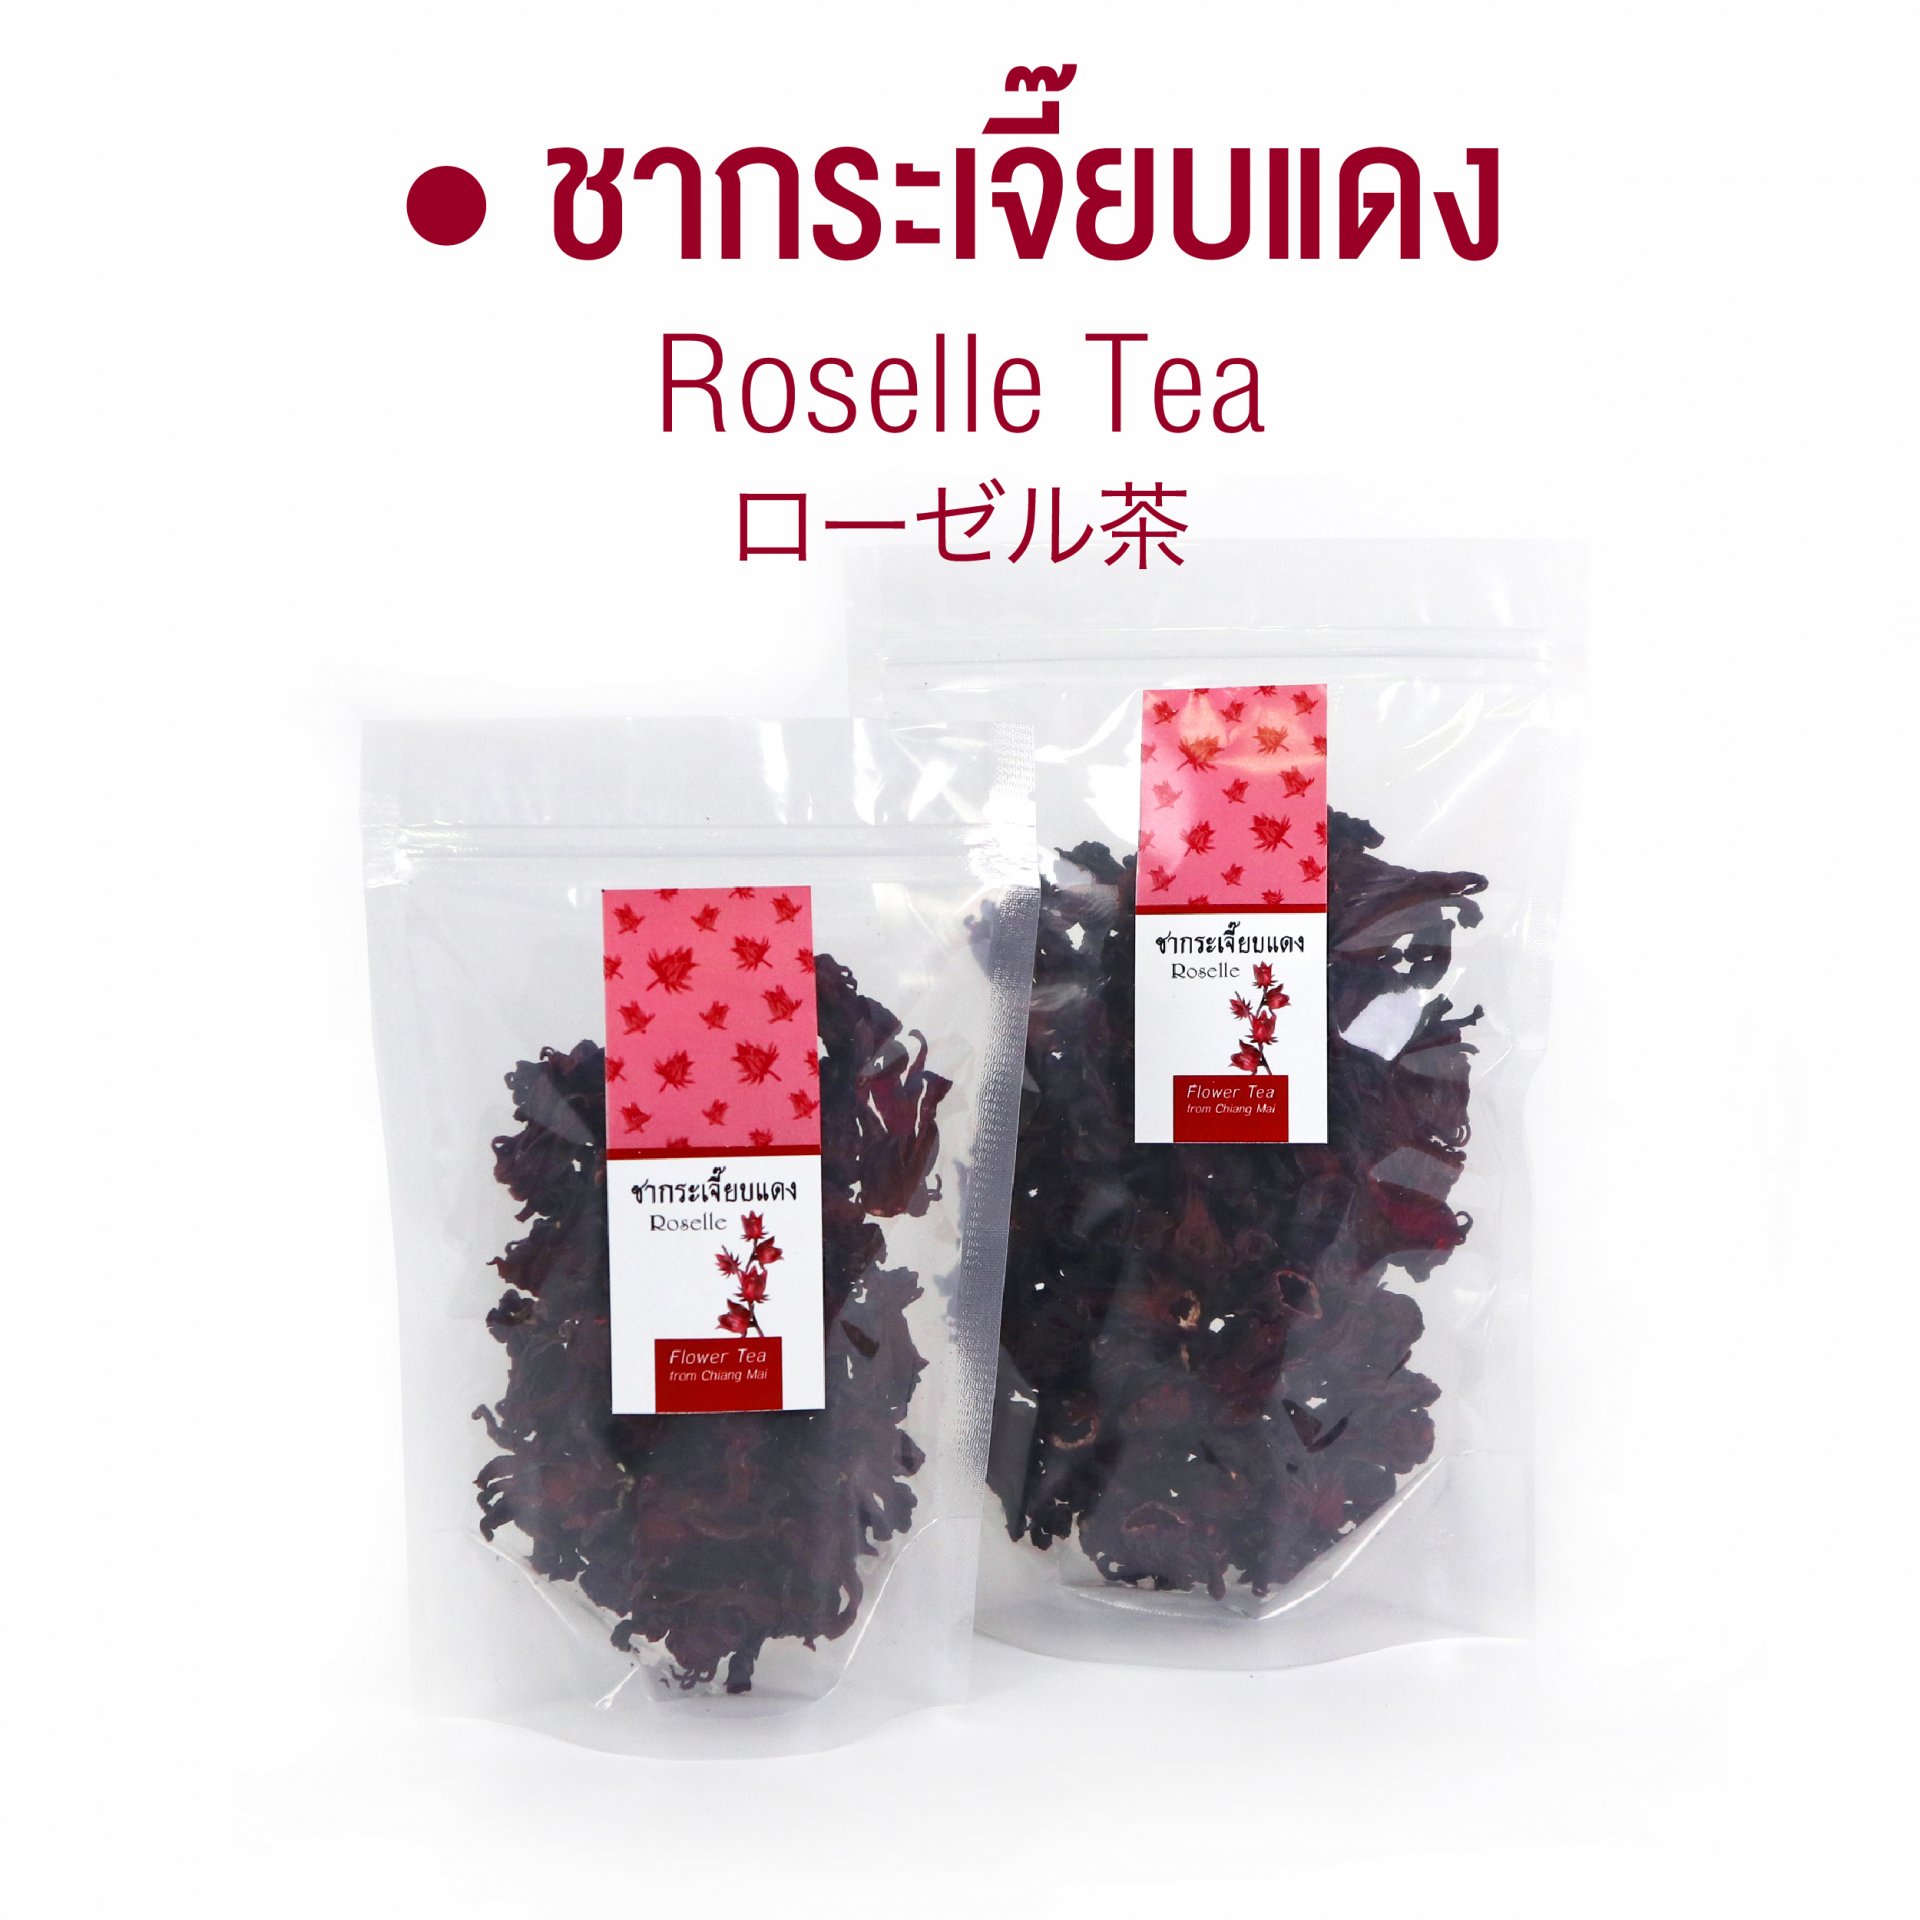 ชากระเจี๊ยบแดง Roselle Tea